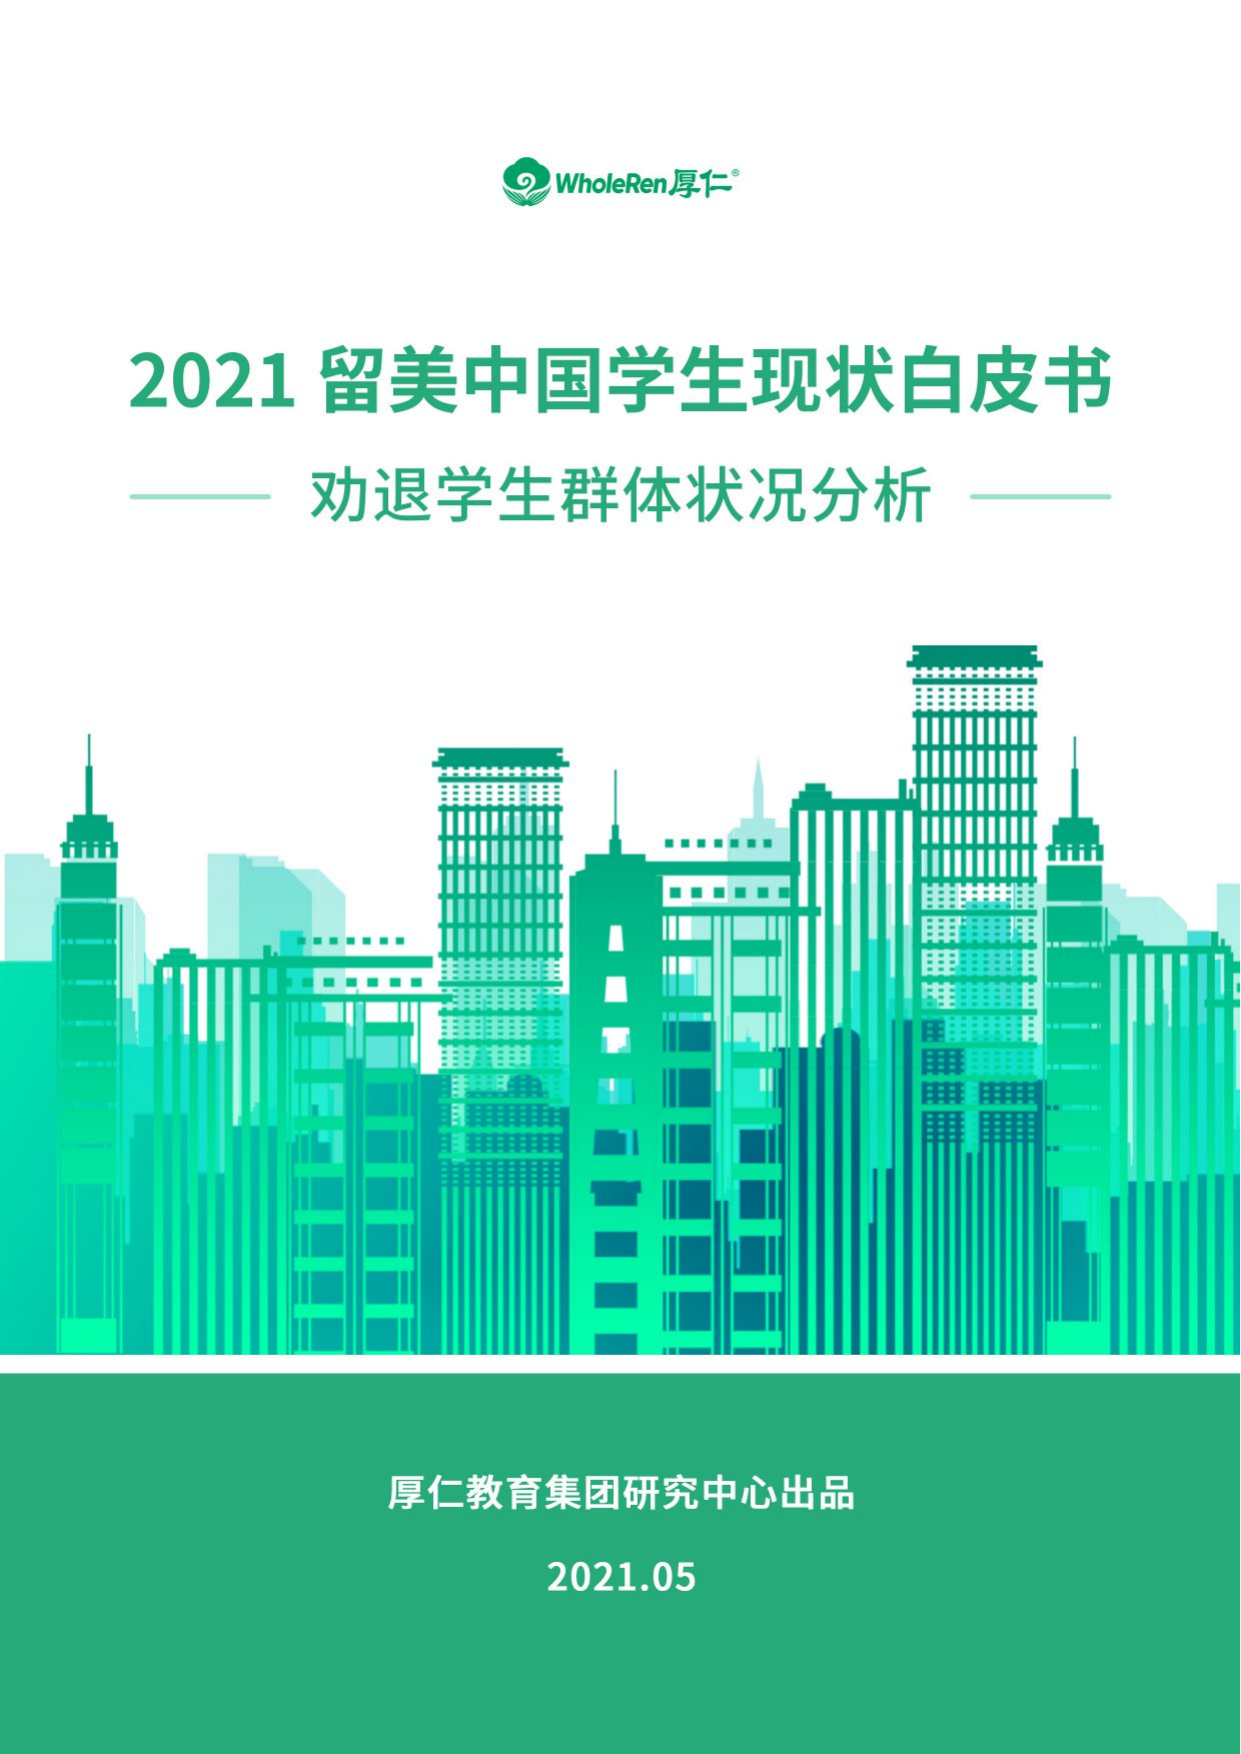 厚仁教育-2021年留美中国学生现状白皮书中文版